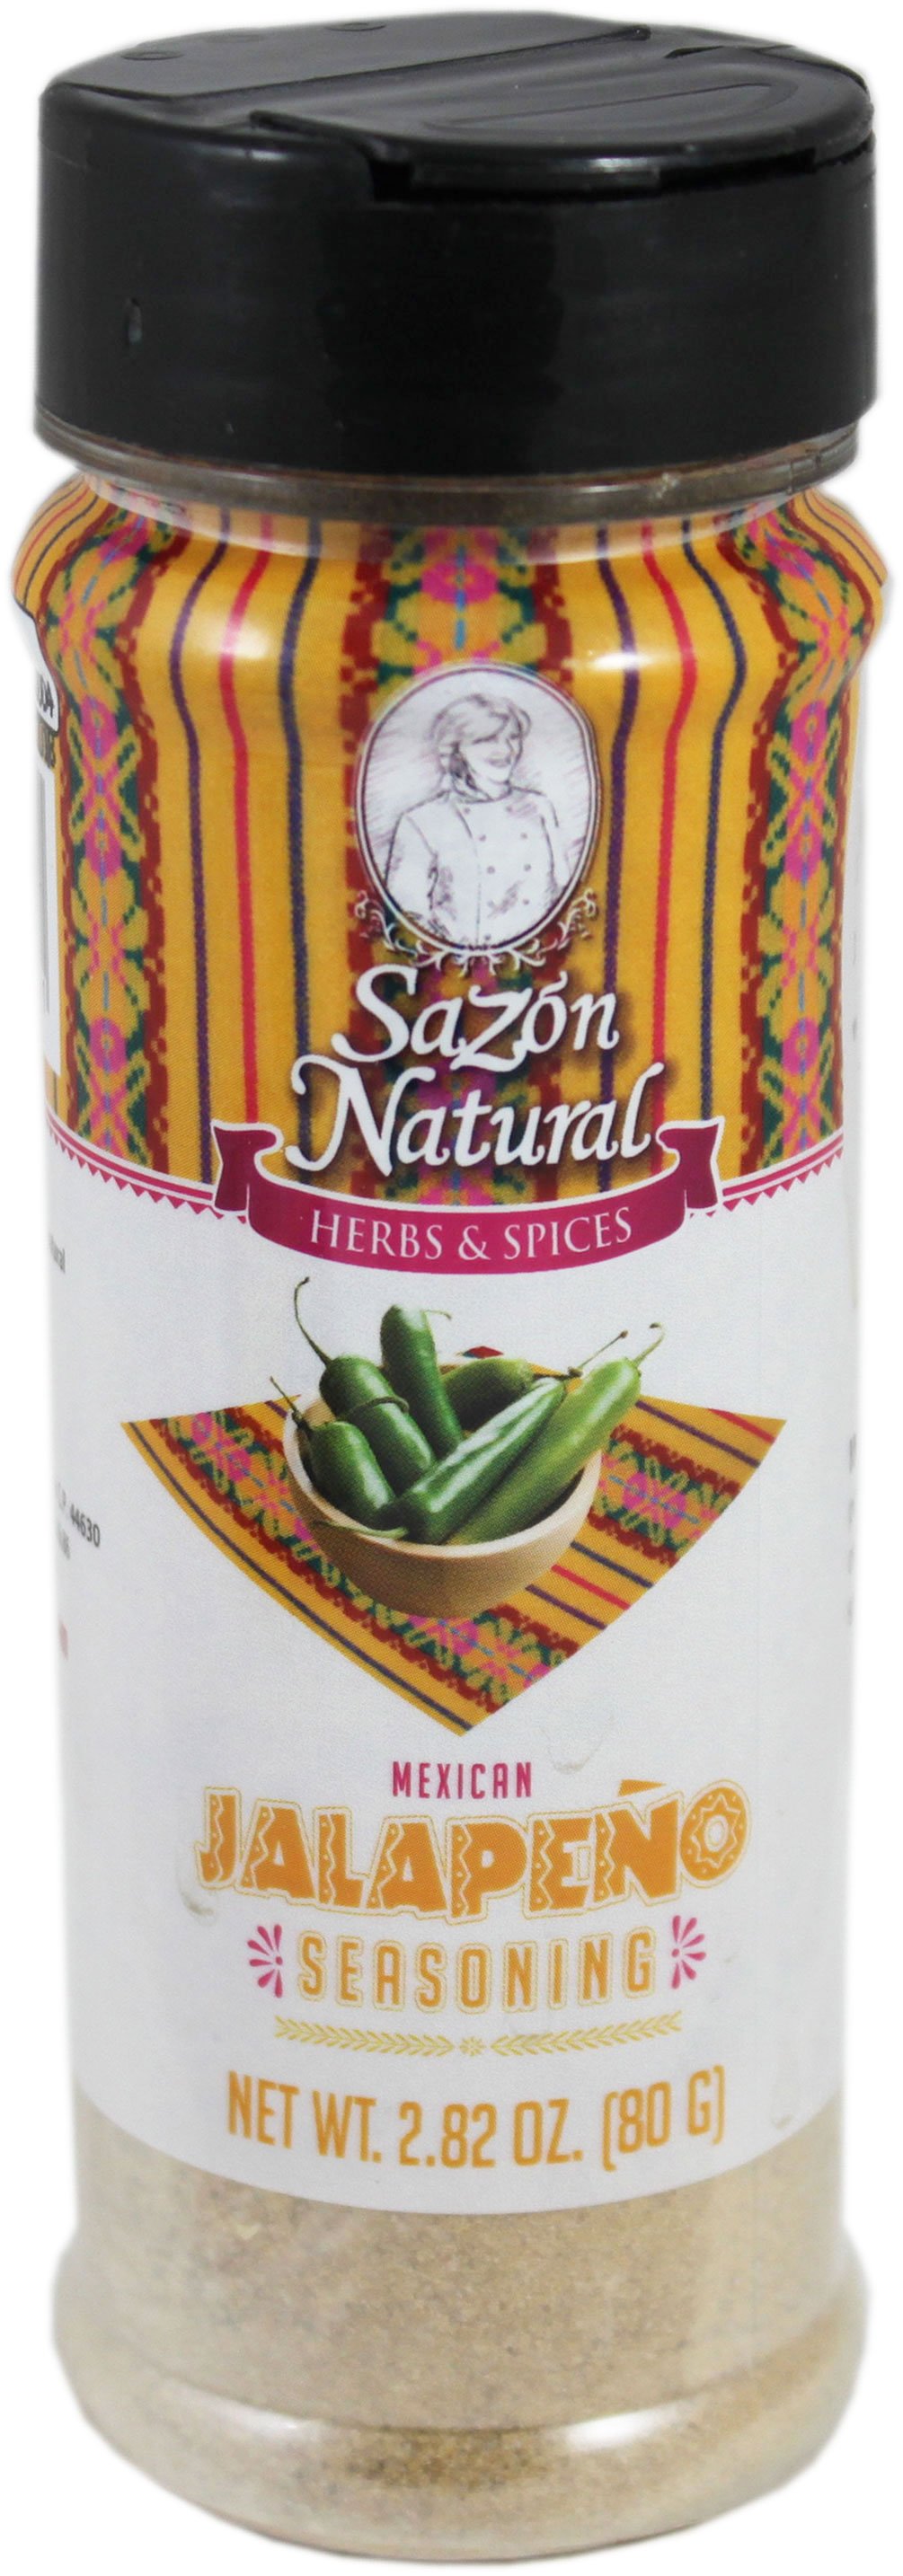 Sazon Natural Jalapeno Seasoning Shop Spice Mixes At H E B